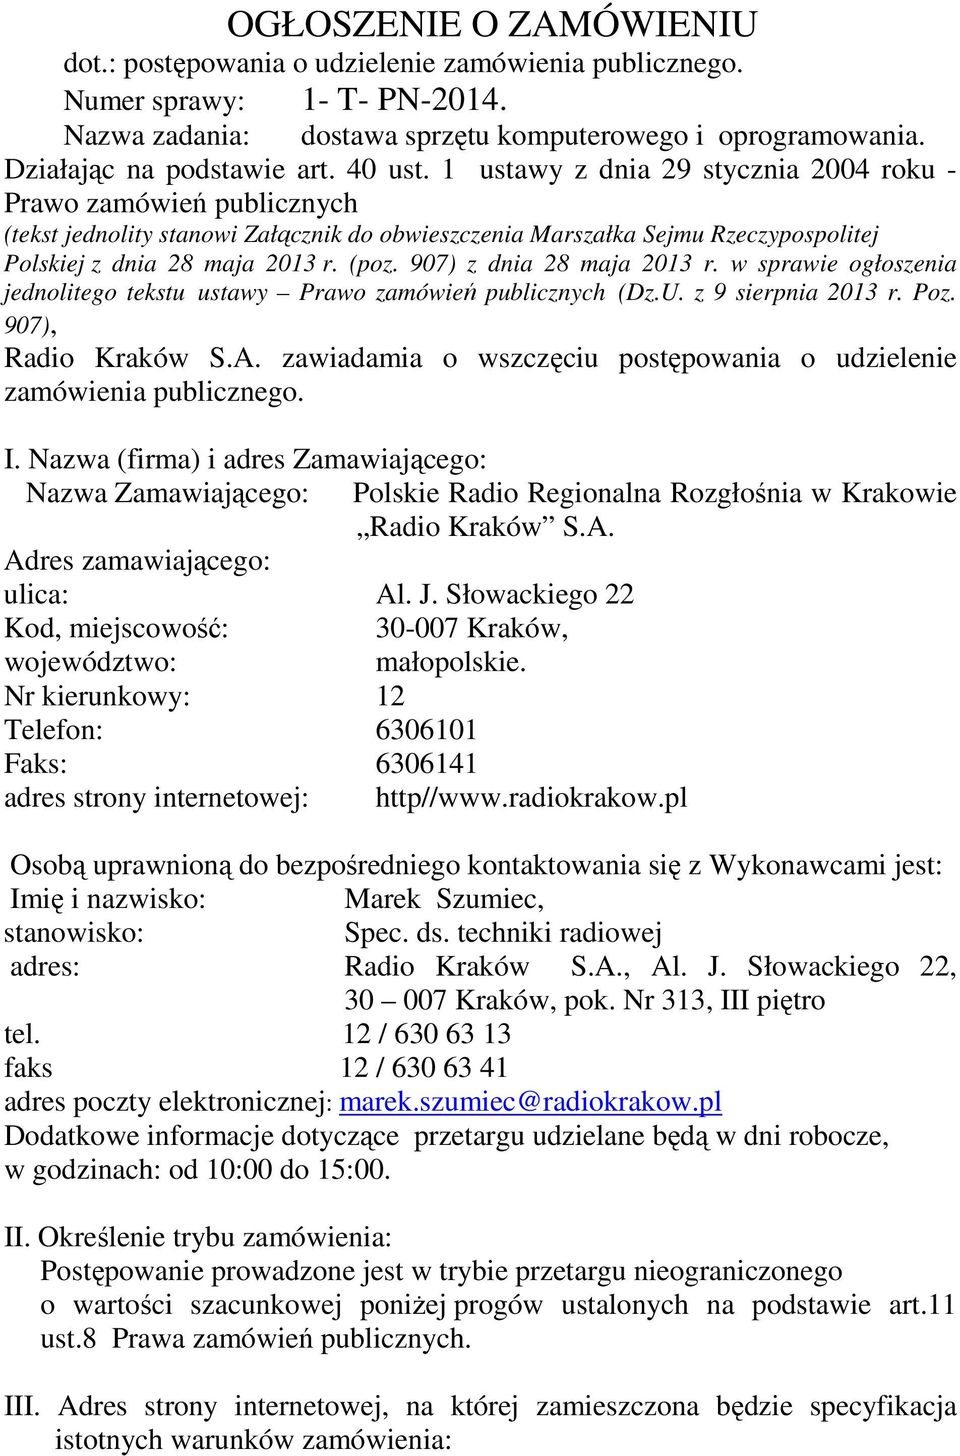 907) z dnia 28 maja 2013 r. w sprawie ogłoszenia jednolitego tekstu ustawy Prawo zamówień publicznych (Dz.U. z 9 sierpnia 2013 r. Poz. 907), Radio Kraków S.A.